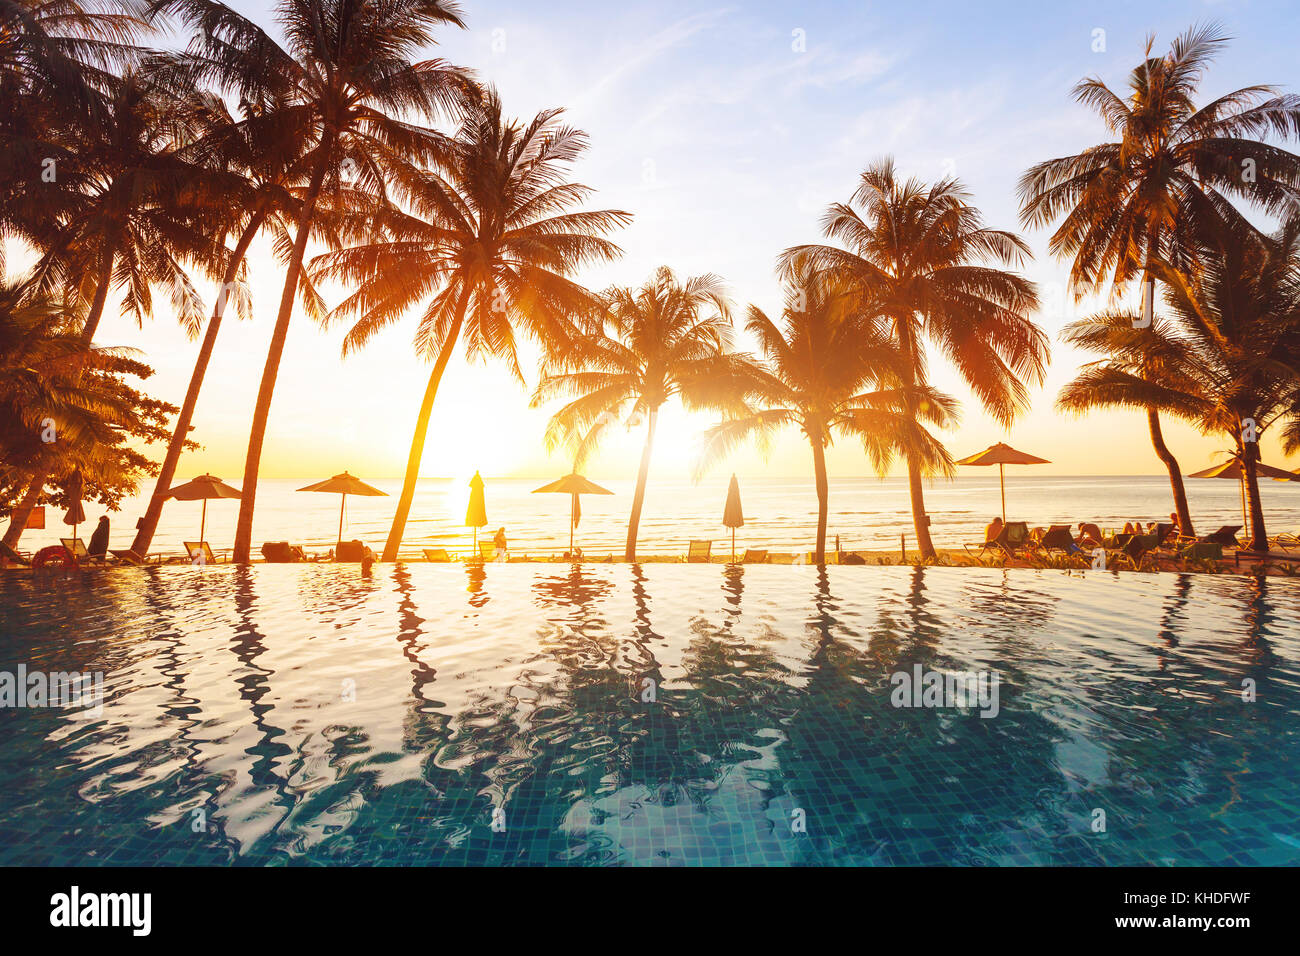 Piscine de luxe sur la plage, tranquille scène de paysage tropical exotique avec copie espace, pour les vacances d'été vacances d'arrière-plan Banque D'Images